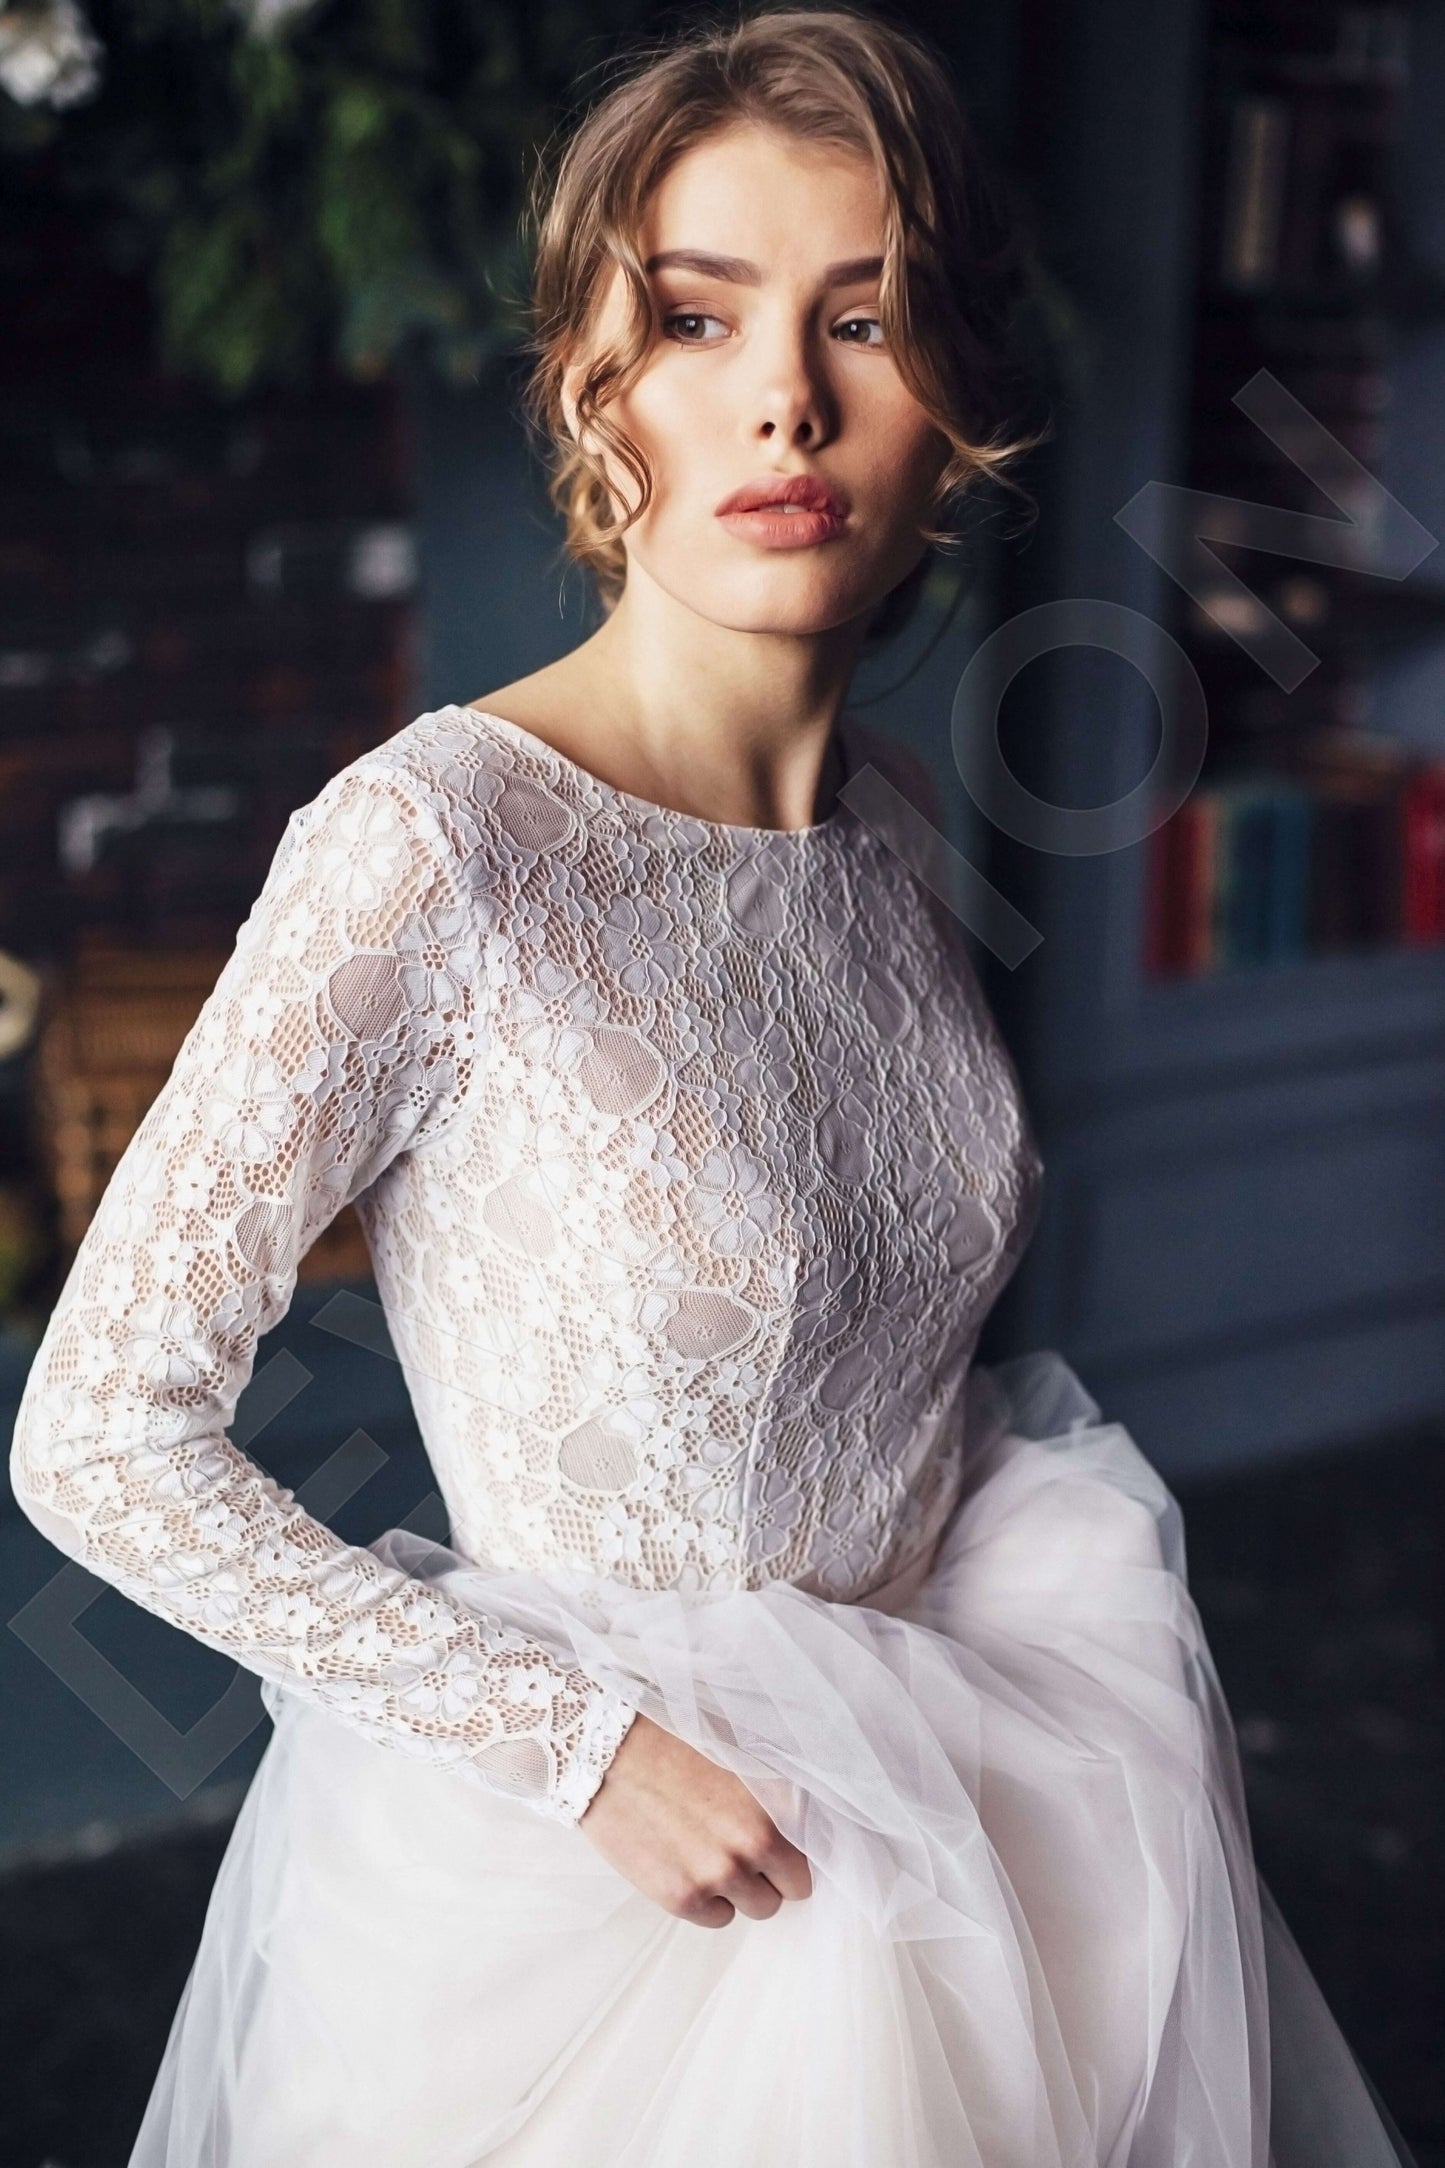 Pilar Open back A-line Long sleeve Wedding Dress 2